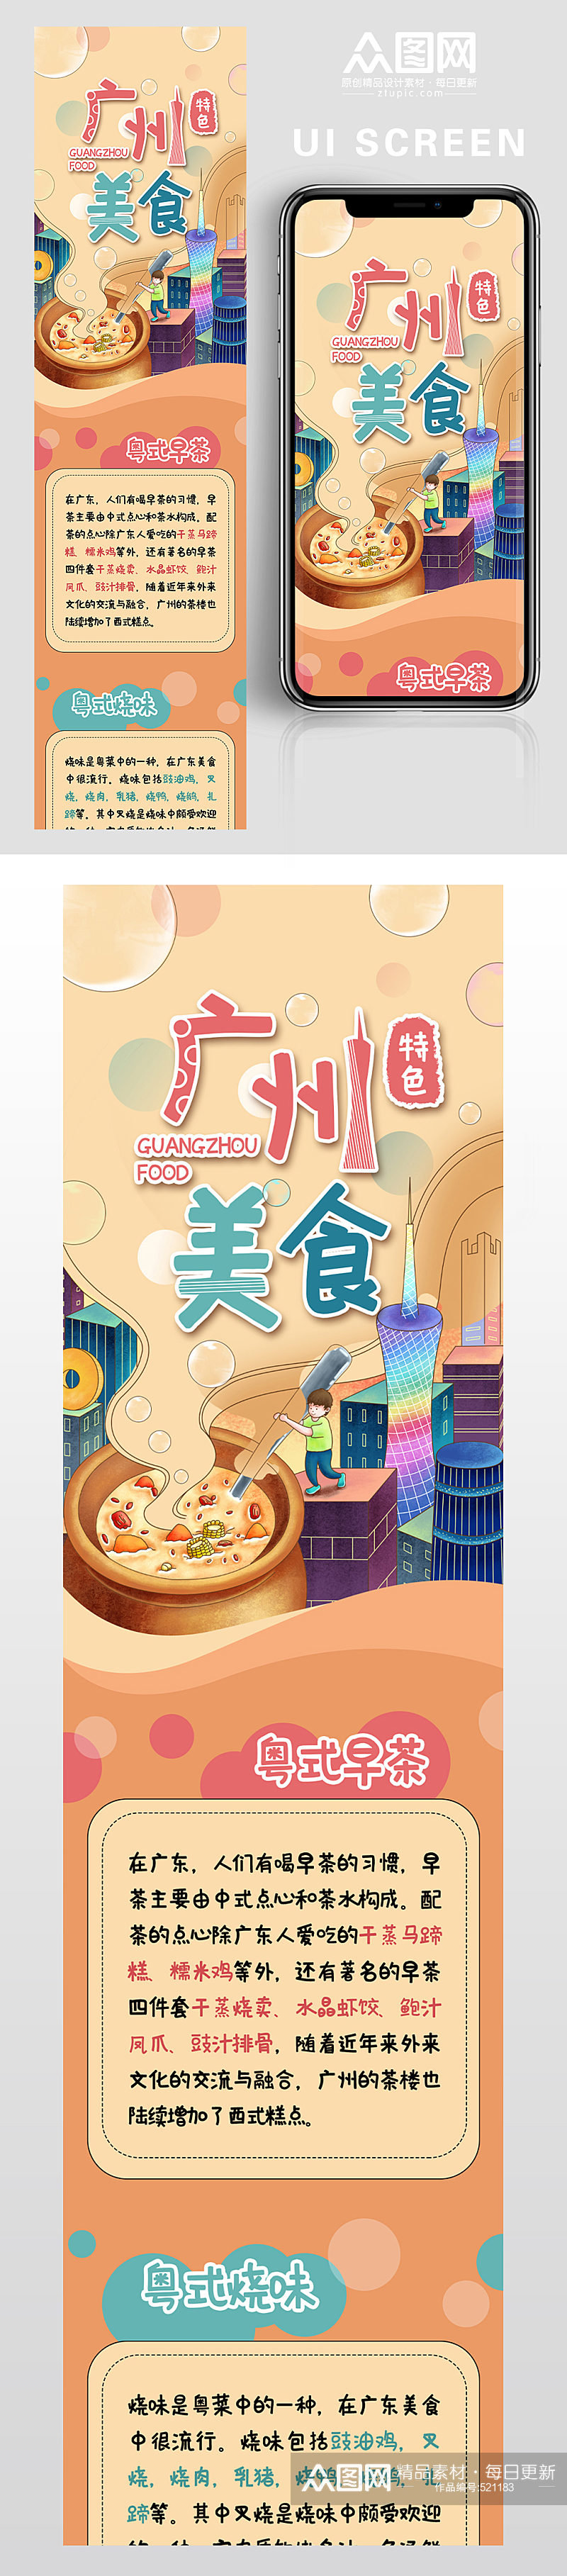 广州特色美食宣传UI界面素材